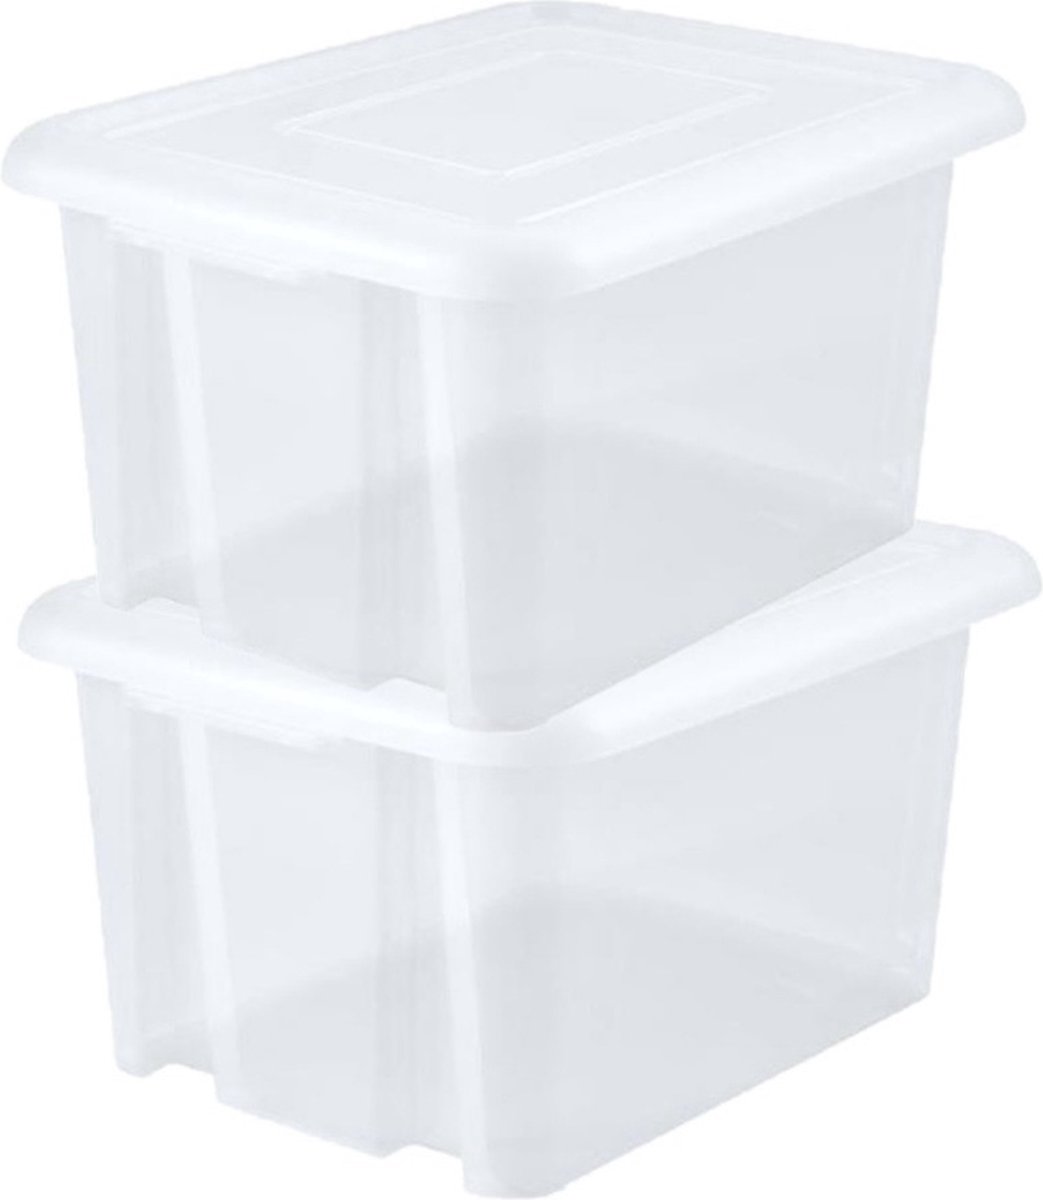 10x stuks kunststof opbergboxen/opbergdozen wit transparant L65 x B50 x H36 cm stapelbaar - Voorraad/opberg boxen/kisten/bakken met deksel